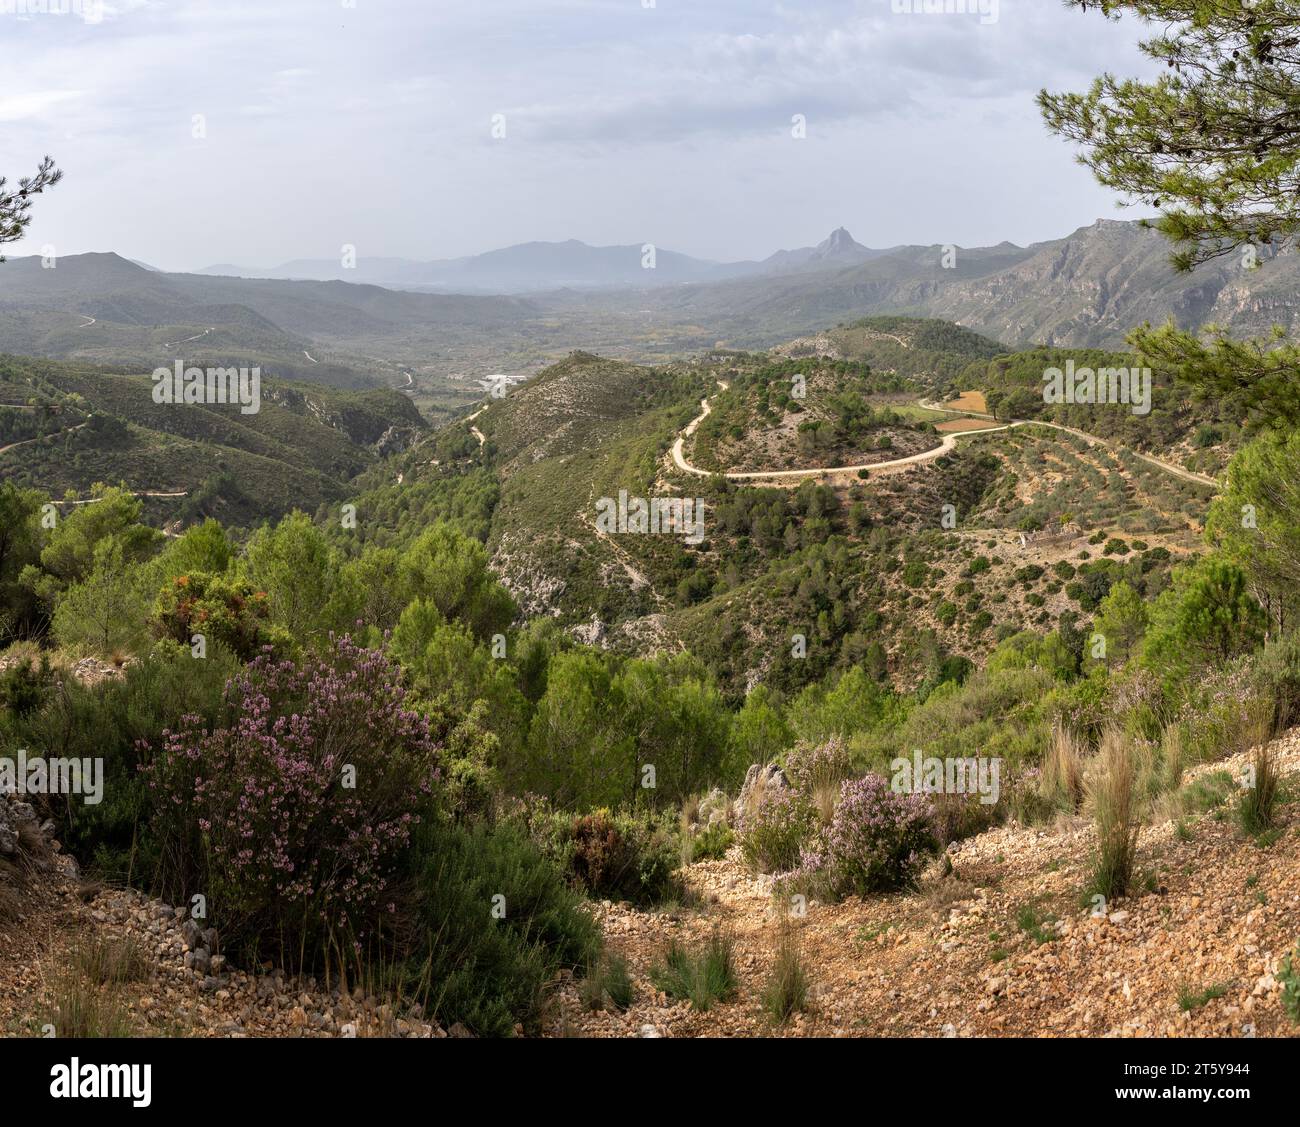 Vues sur la vallée du Serpis près de Lorcha, dans la province de Valence, Espagne avec une végétation débordante. Concept de conservation de la nature Banque D'Images